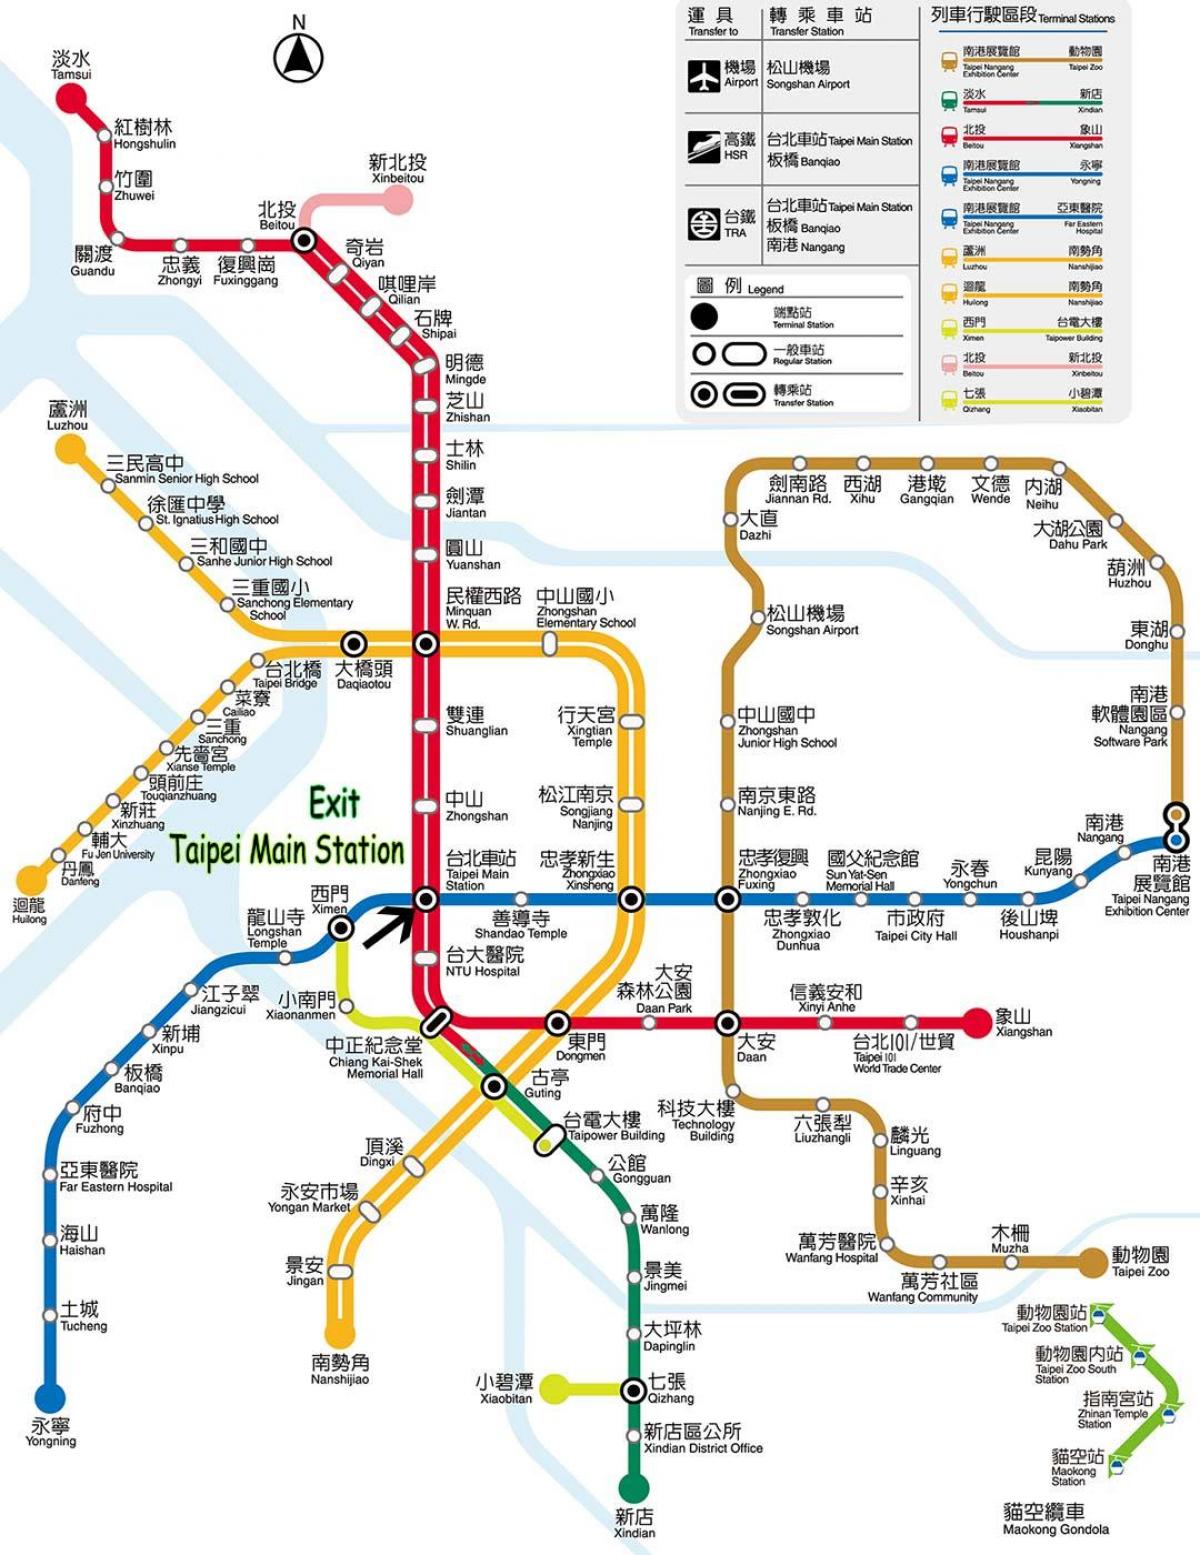 kartta Taipei linja-autoasema